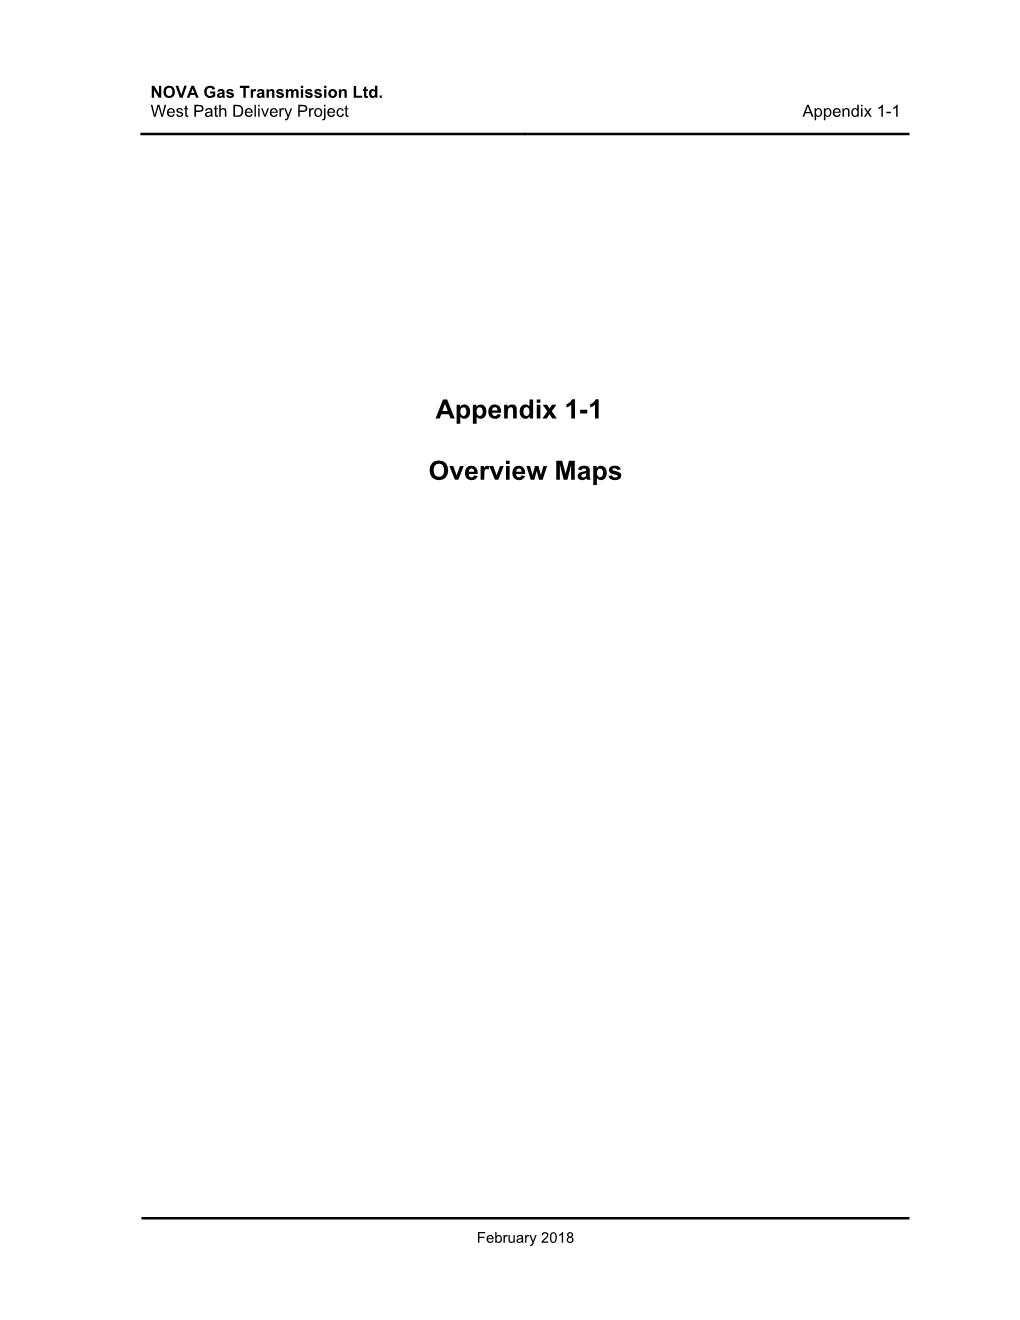 Appendix 1-1 Overview Maps